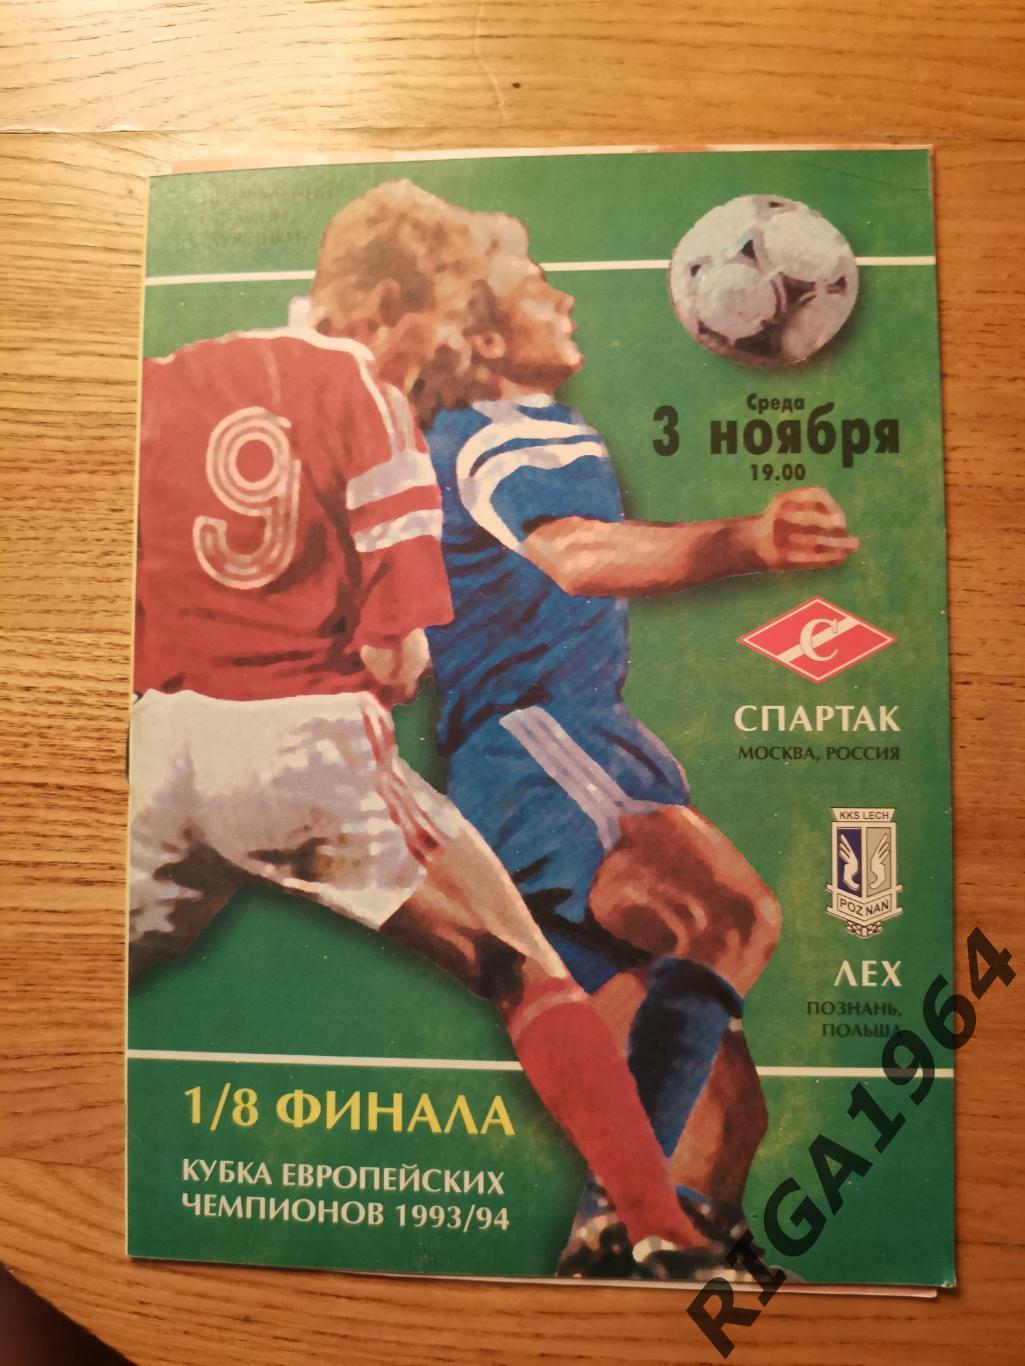 Кубок Чемпионов 1993/94 Спартак Москва-Лех Польша (ФК Спартак)